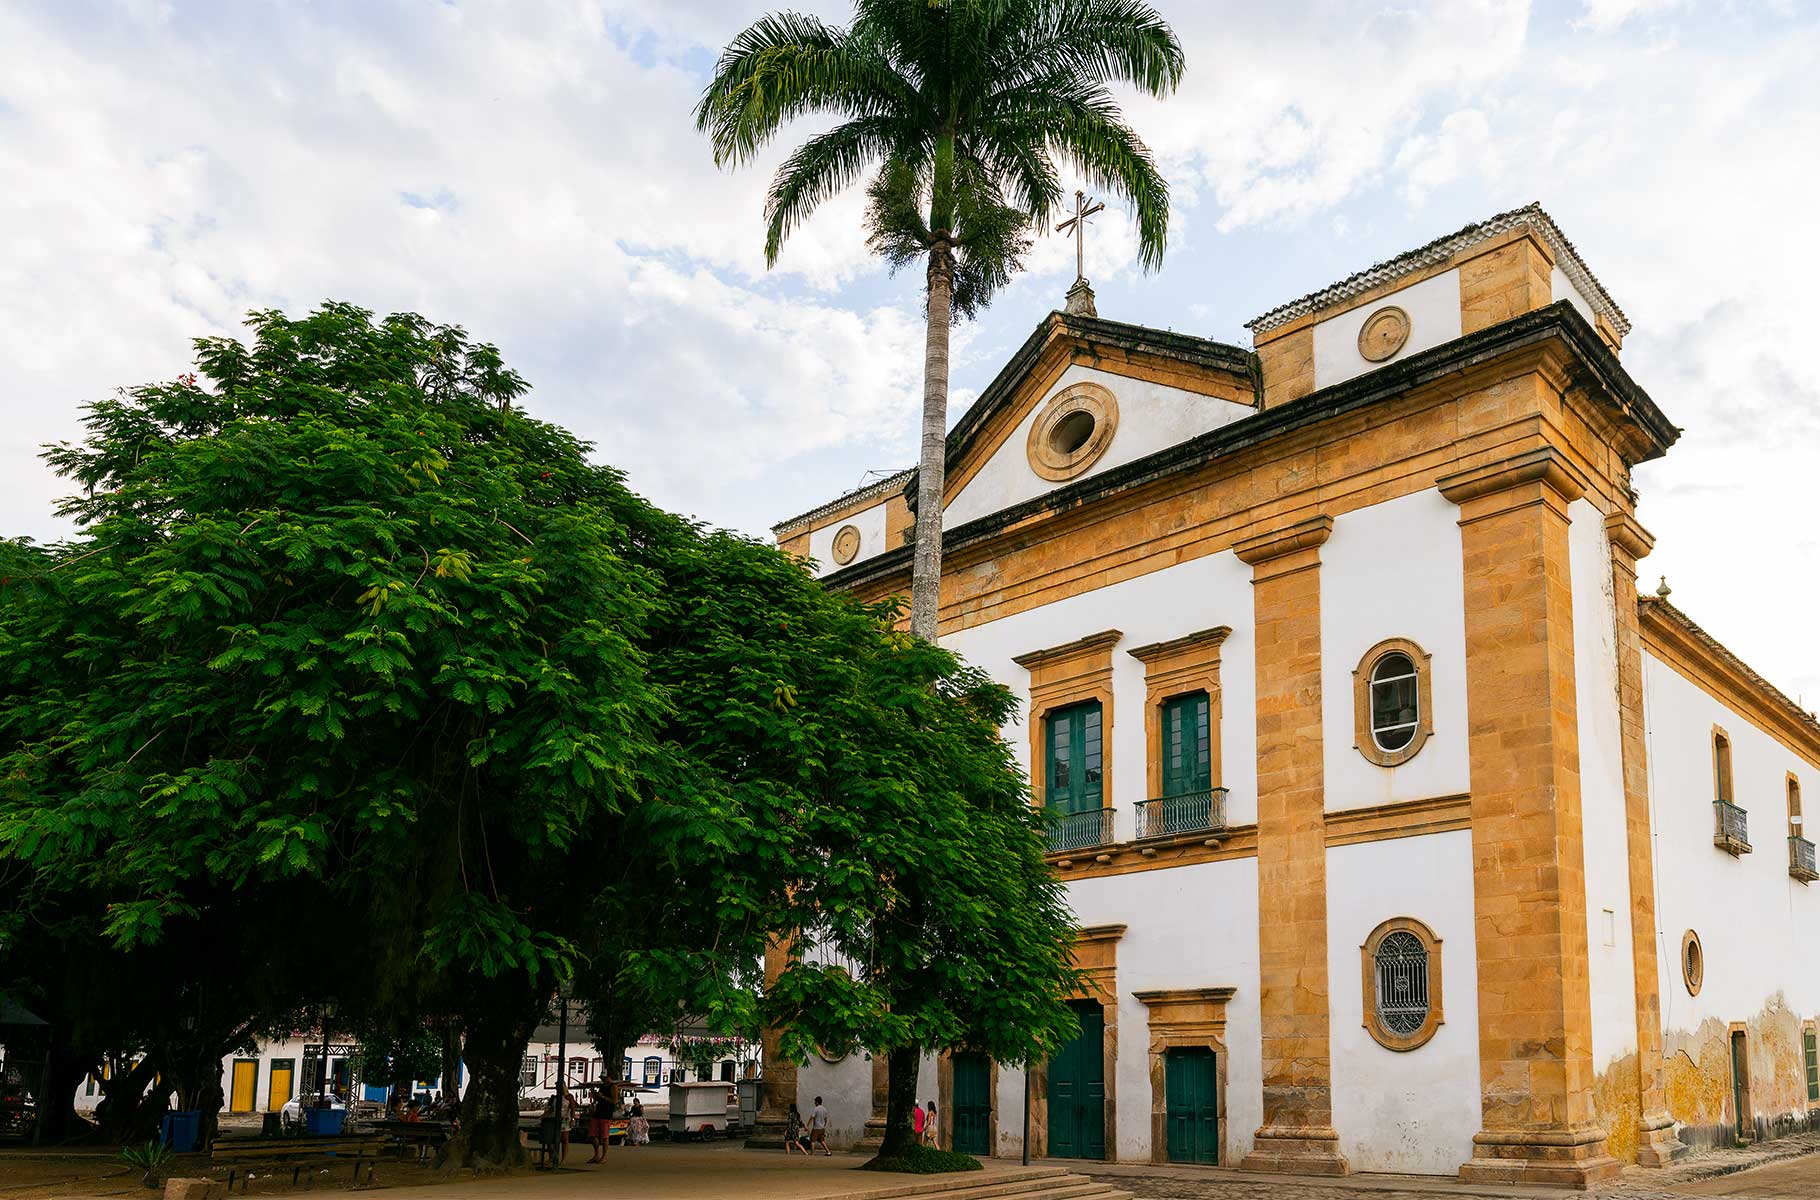 Kolonial-Architektur in Paraty, Sitz der Cachaça Destillerie Alambique Paratiana